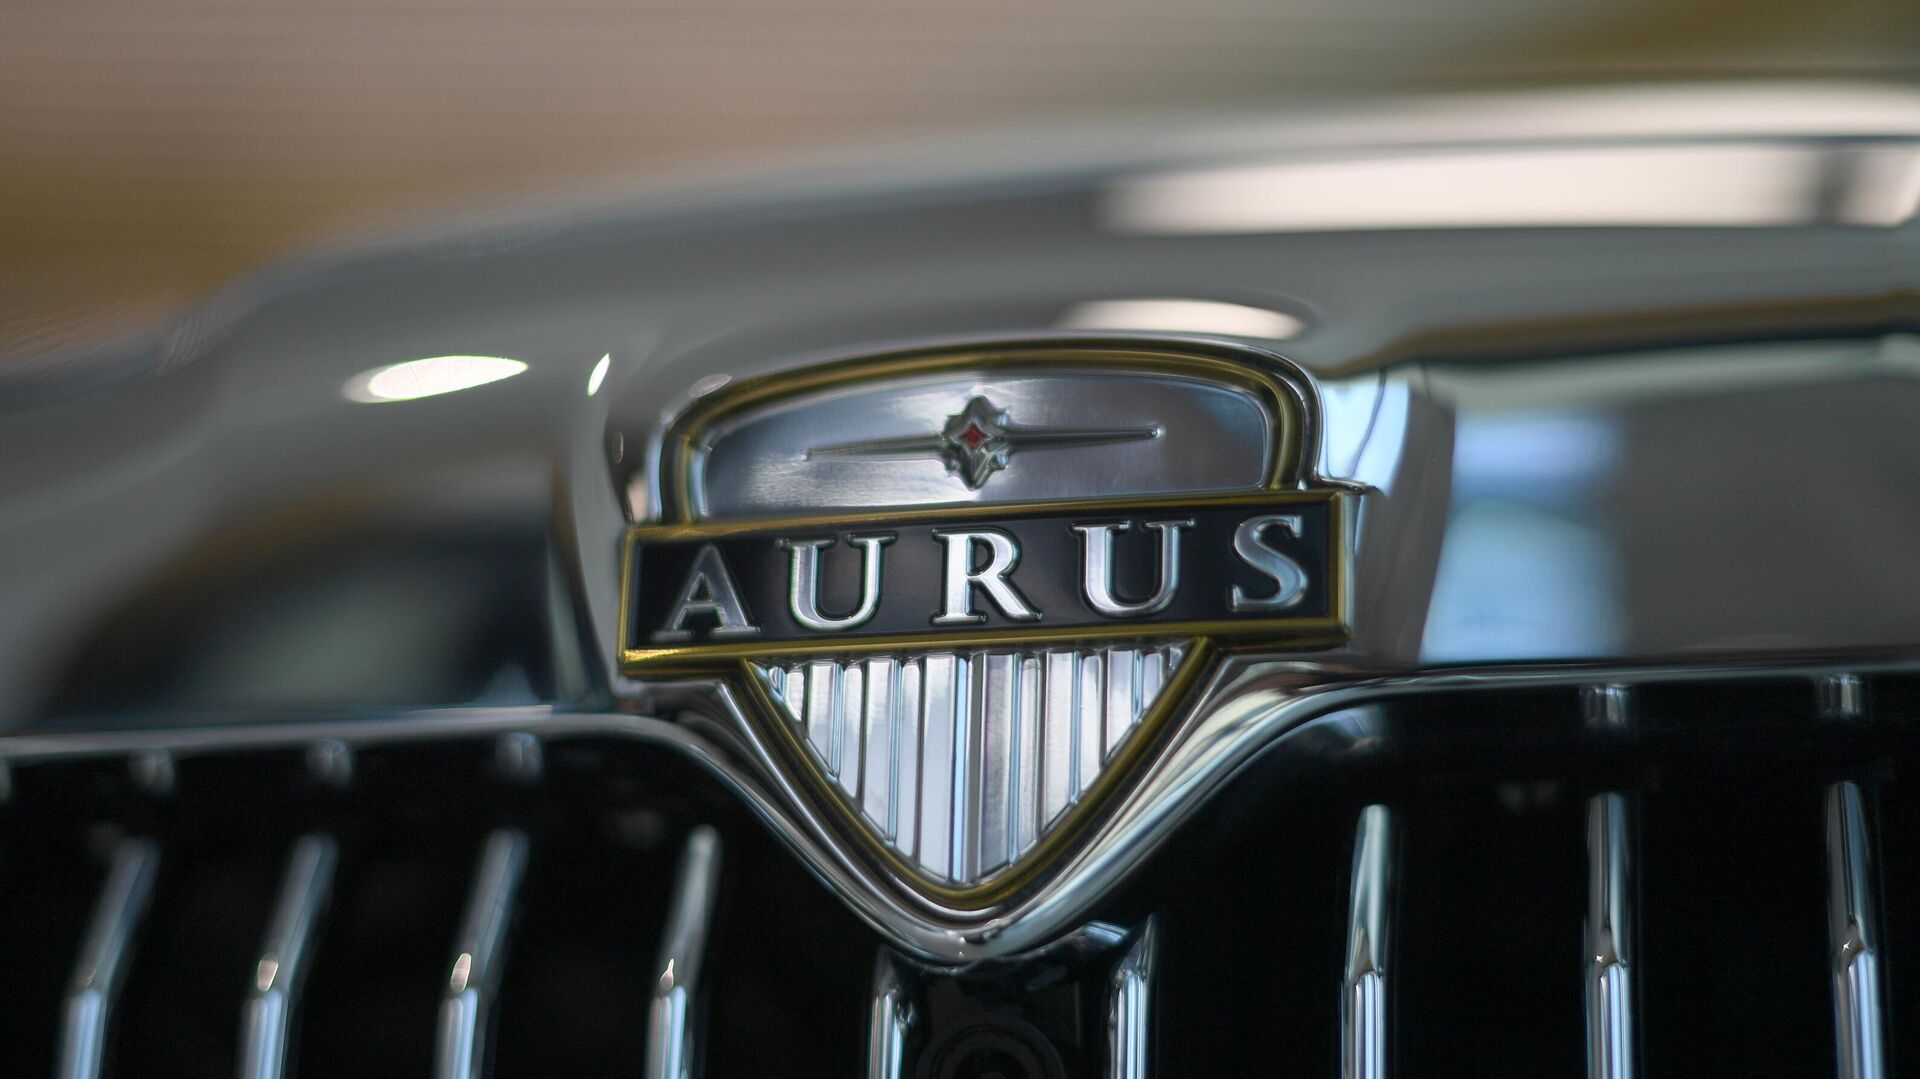 "Серьезная машина": японцев восхитили автомобили Aurus